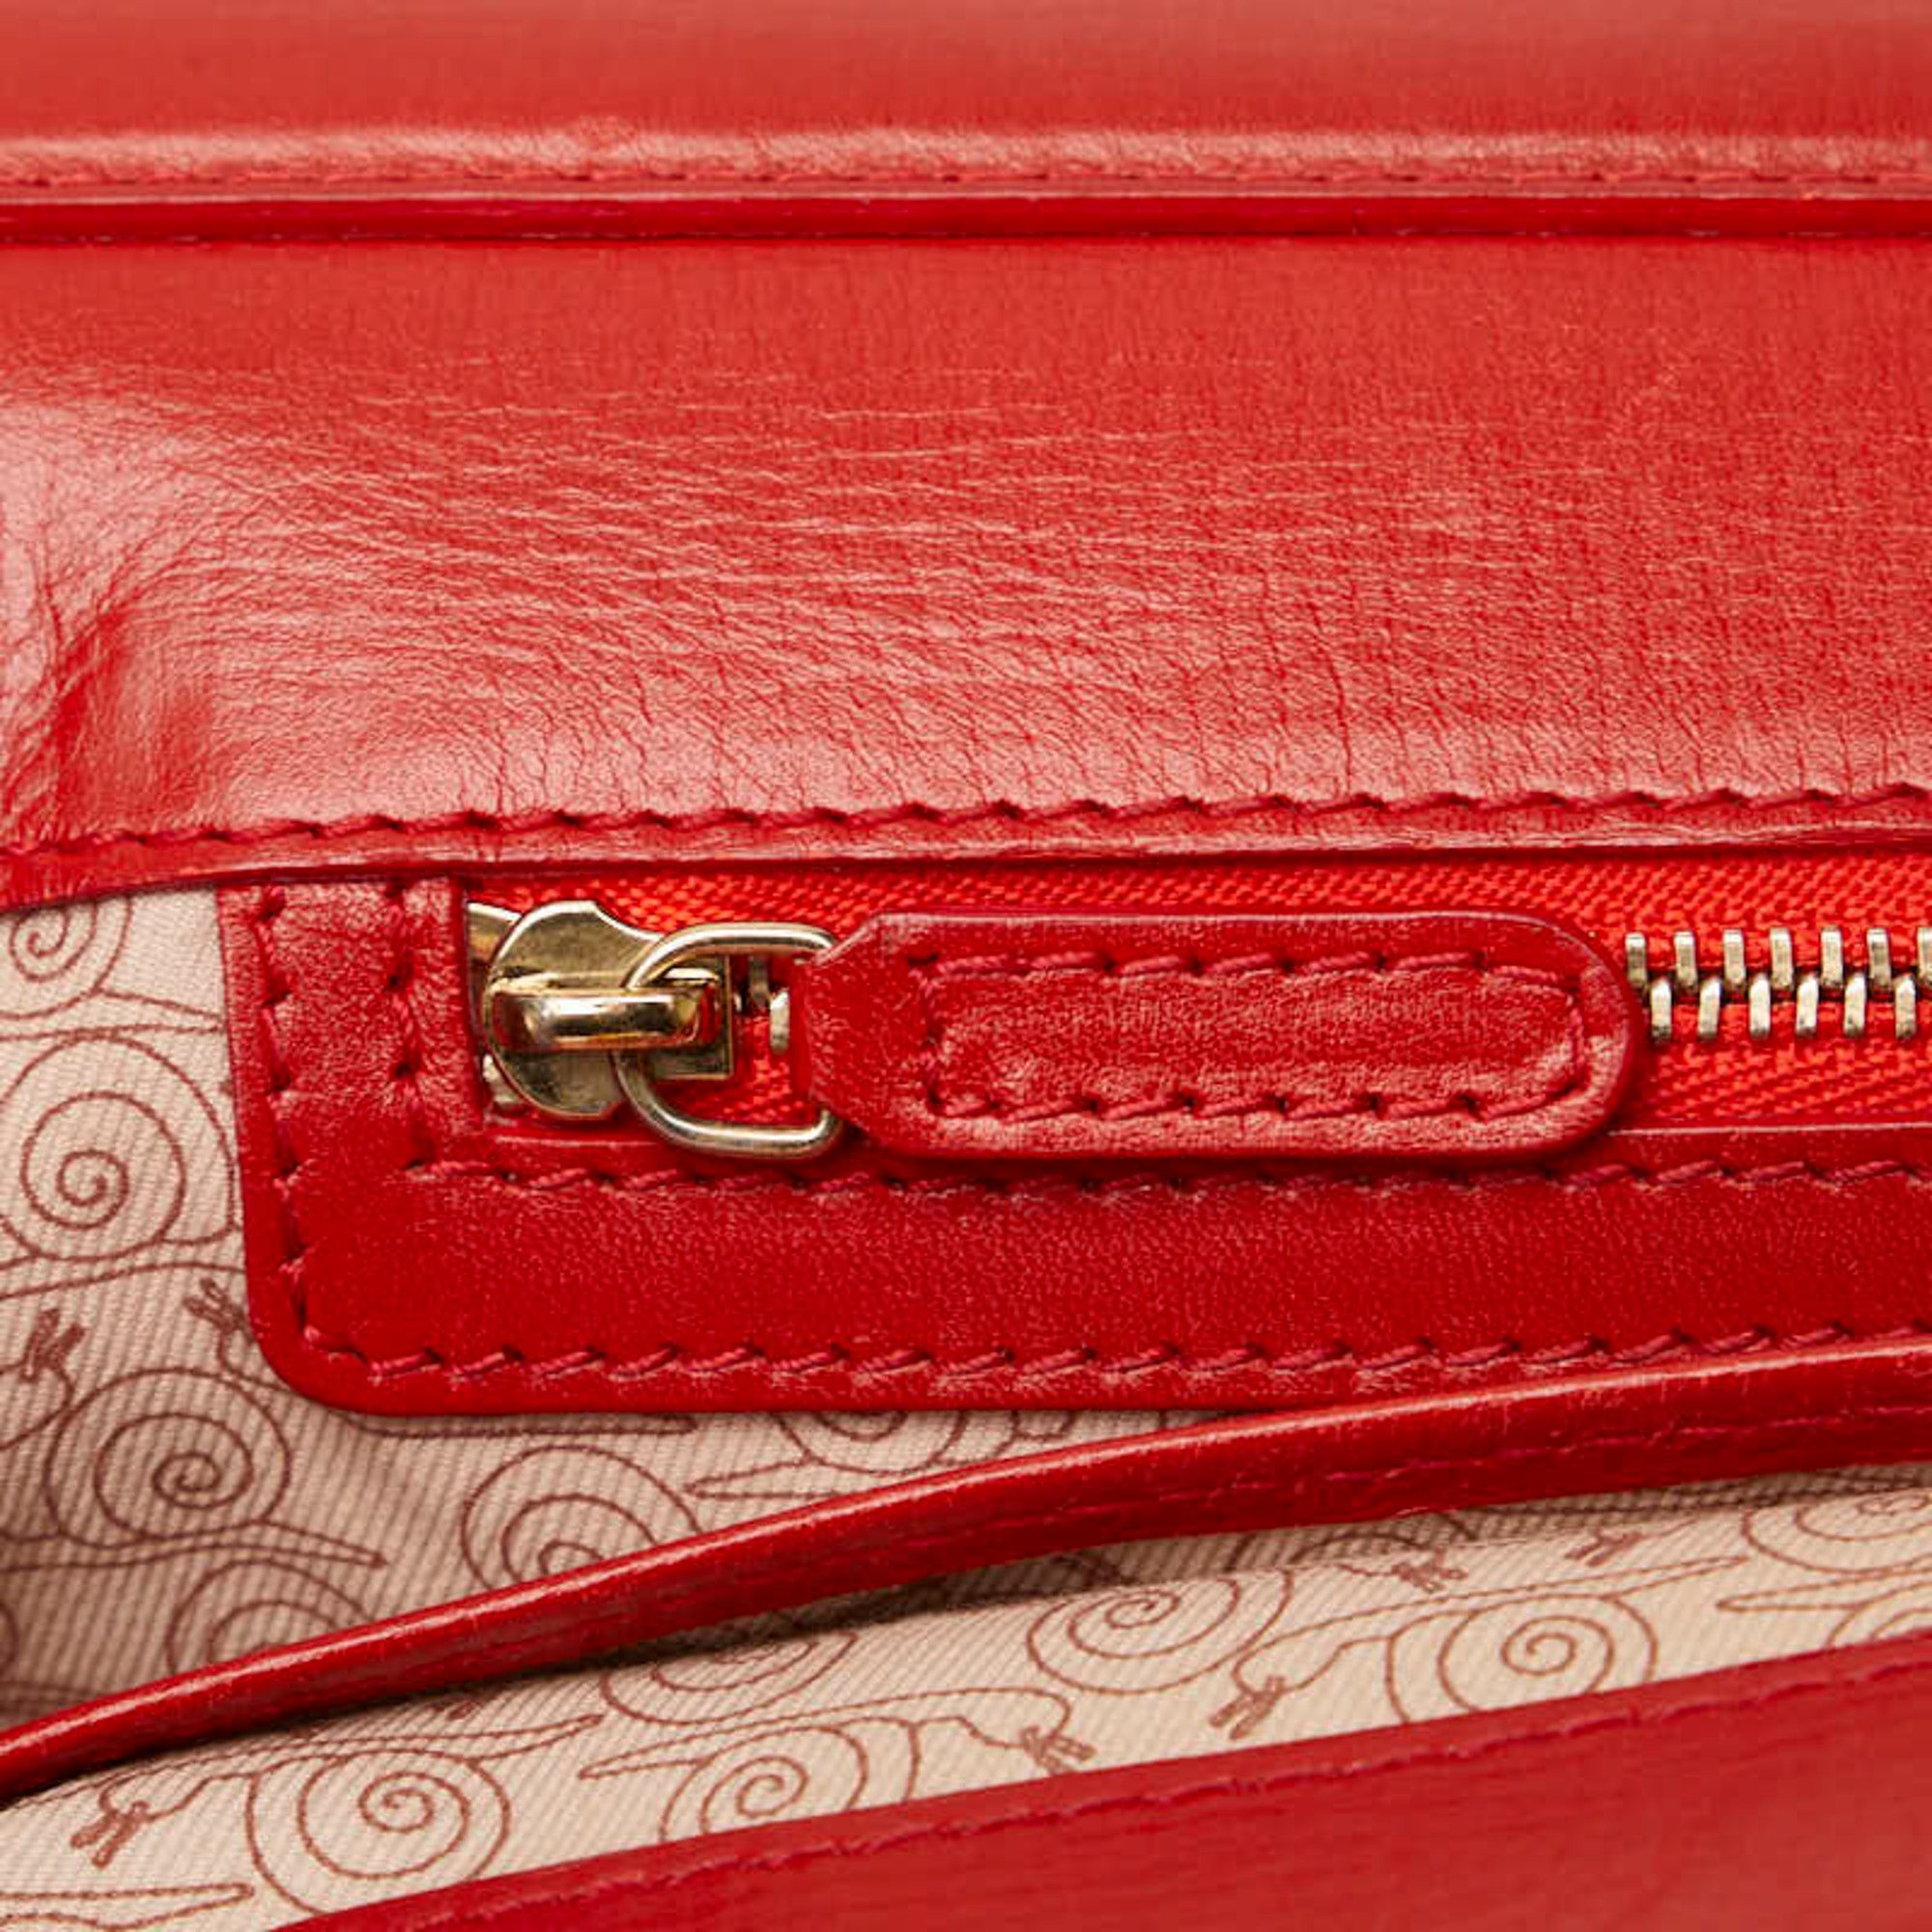 Bvlgari Isabella Rossellini Handbag Shoulder Bag Red Leather Ladies BVLGARI